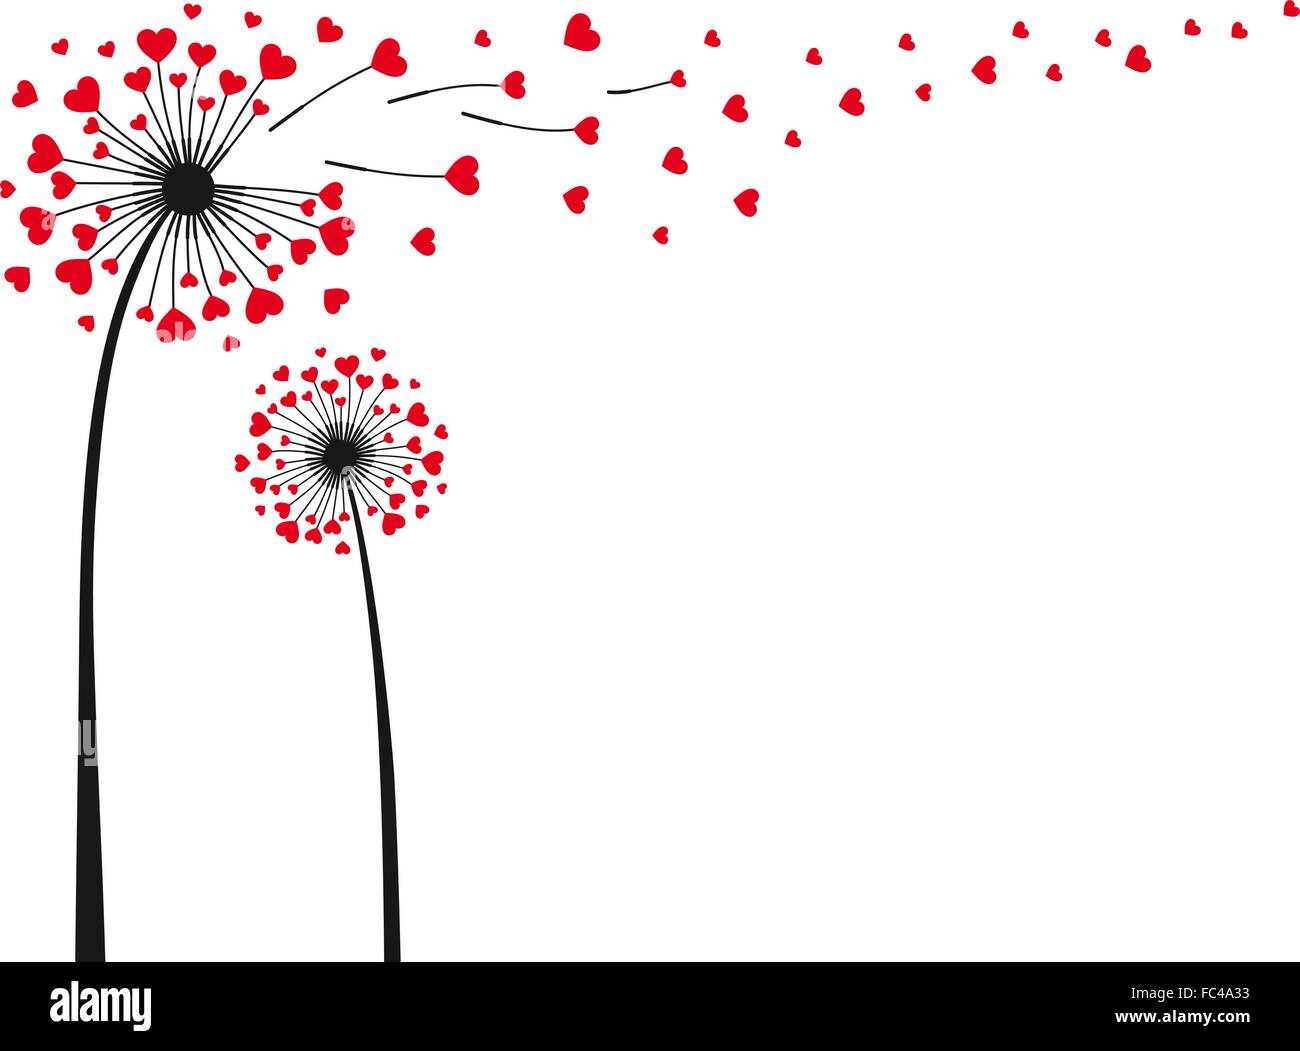 Liebe liegt in der Luft, Löwenzahn mit fliegenden rote Herzen, Vektor-illustration Stock Vektor